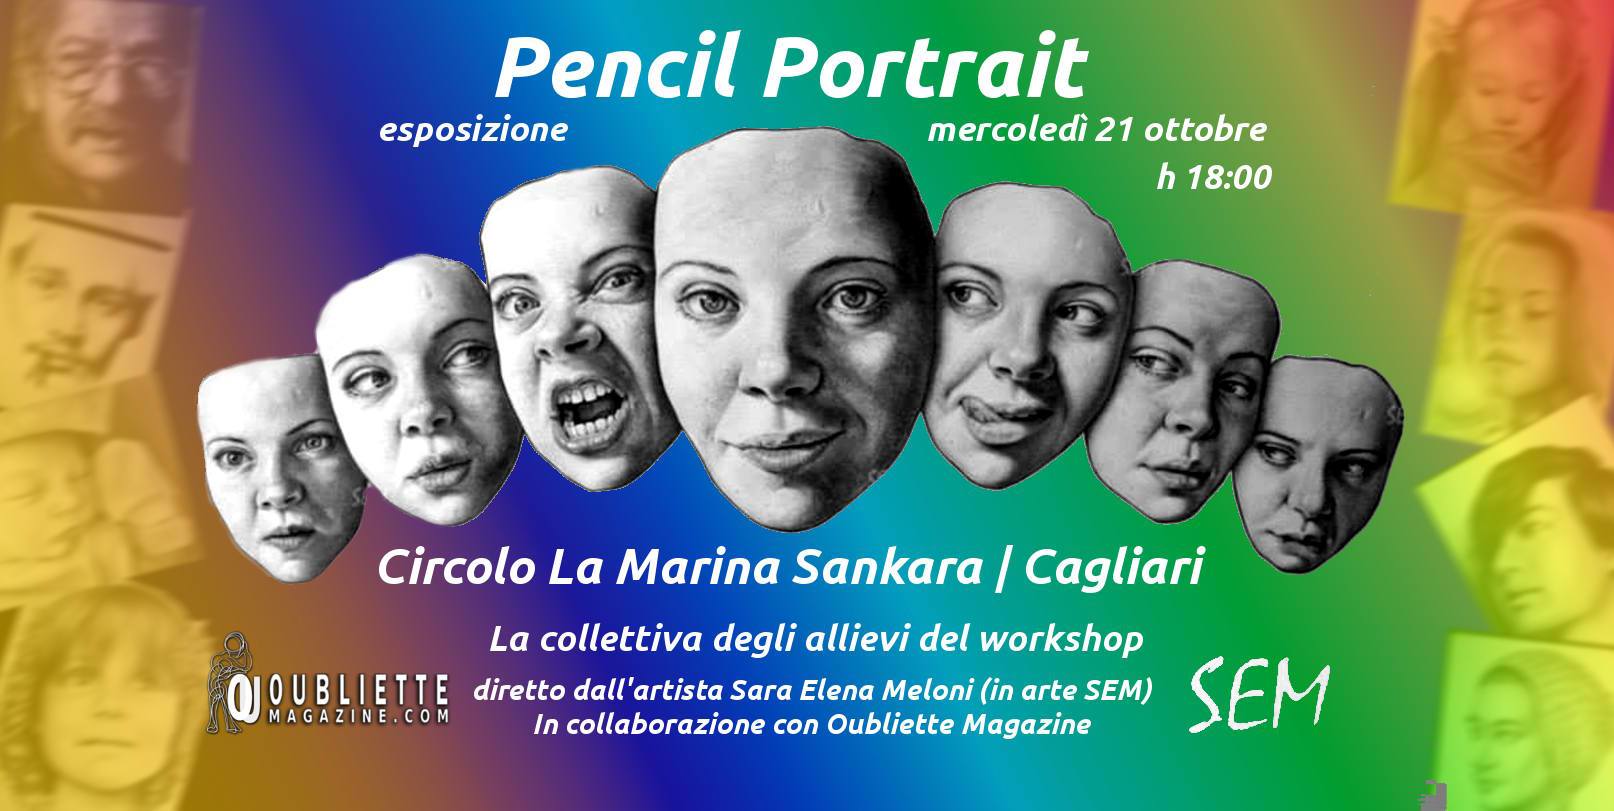 Pencil Portrait: la collettiva degli allievi del workshop, 21 ottobre 2015, Circolo La Marina Sankara, Cagliari